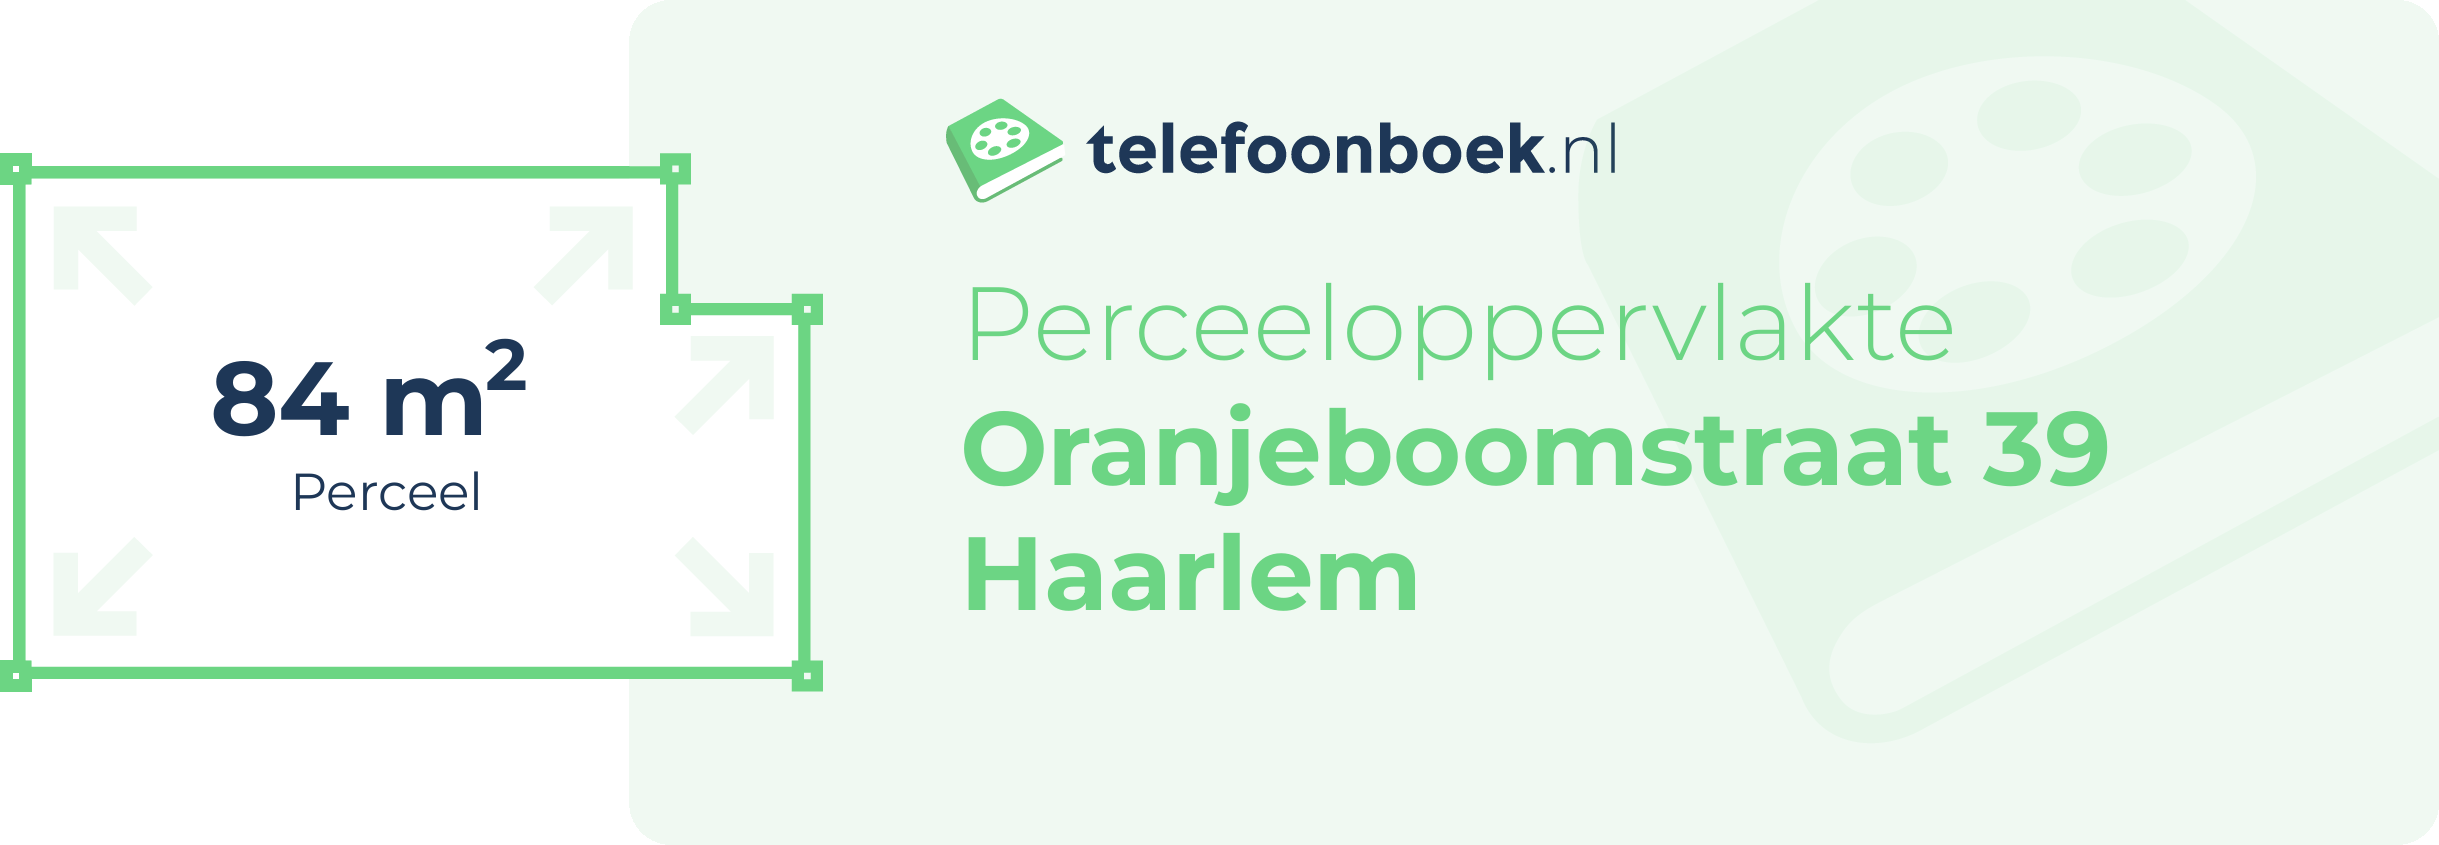 Perceeloppervlakte Oranjeboomstraat 39 Haarlem